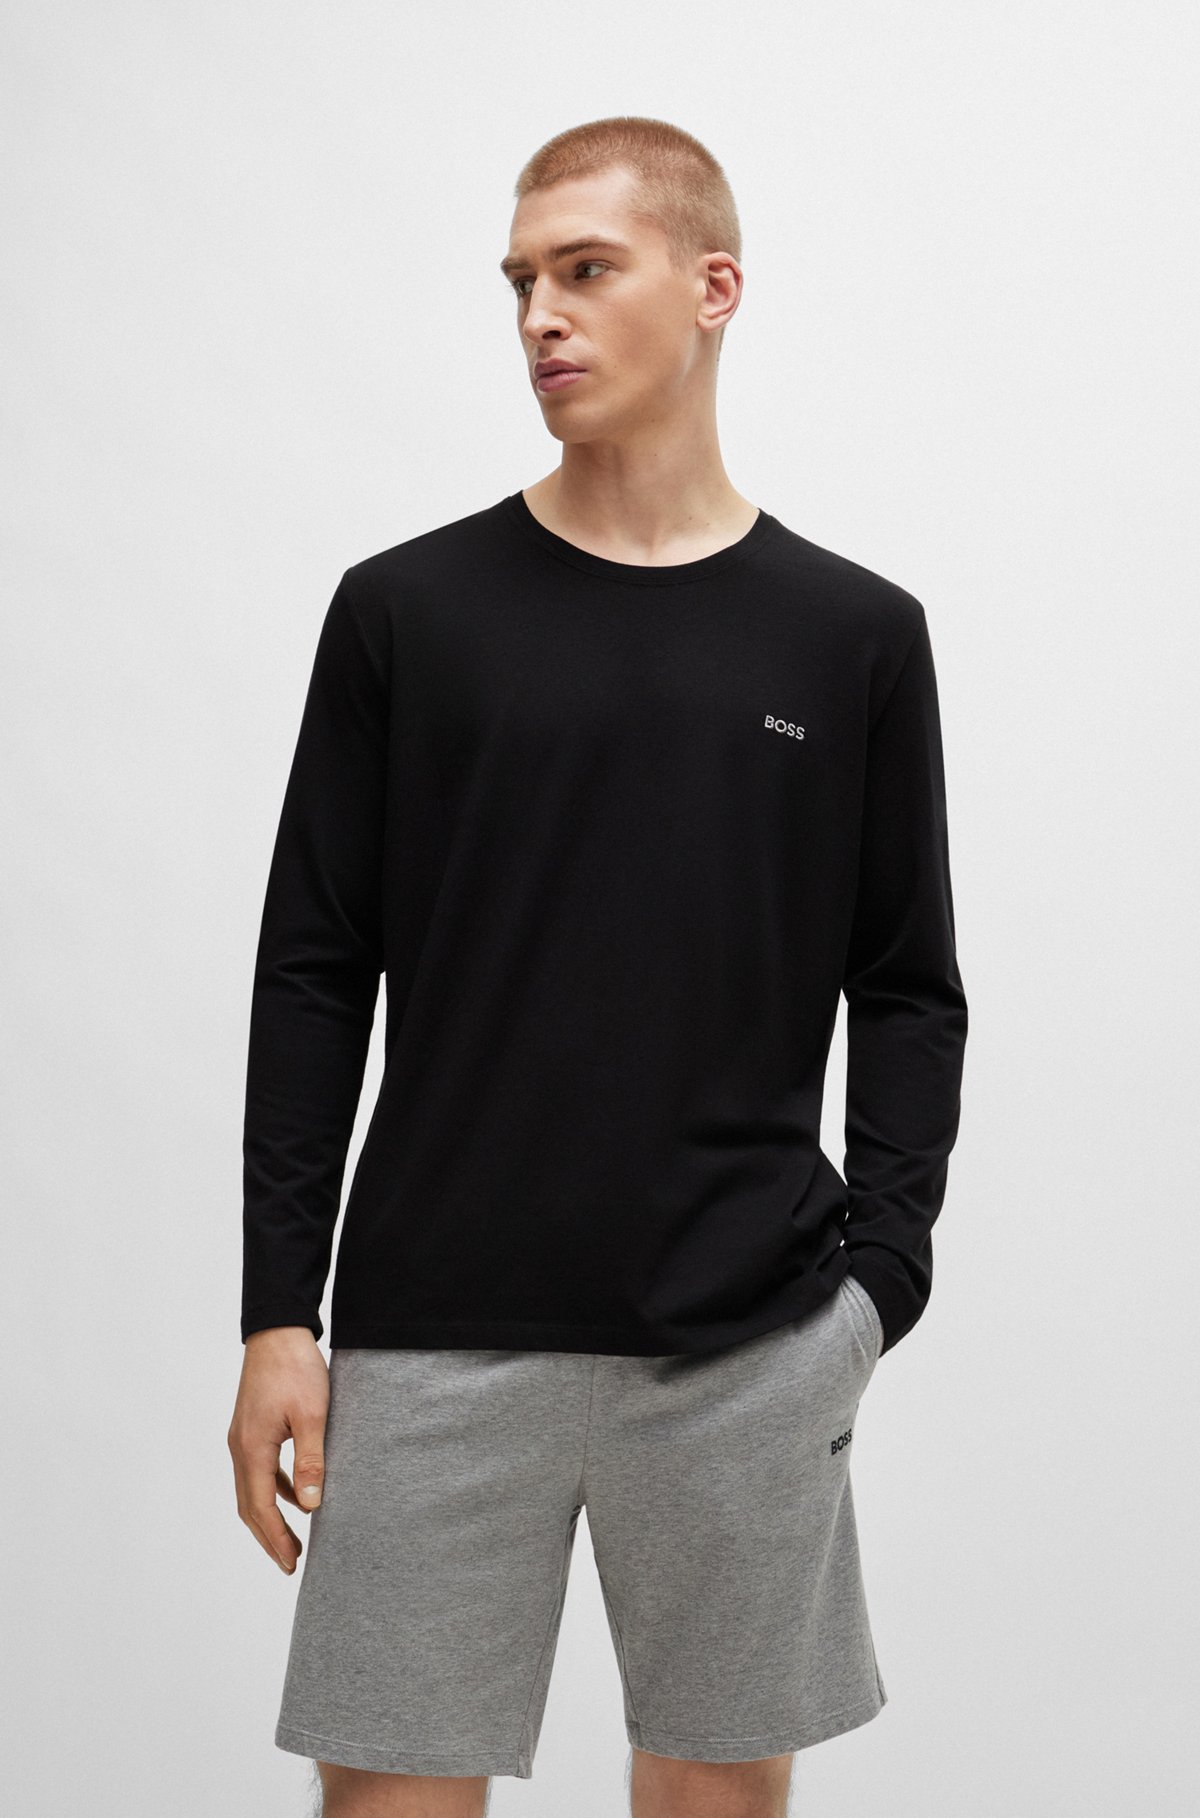 Camiseta regular fit en algodón elástico con logo bordado, Negro